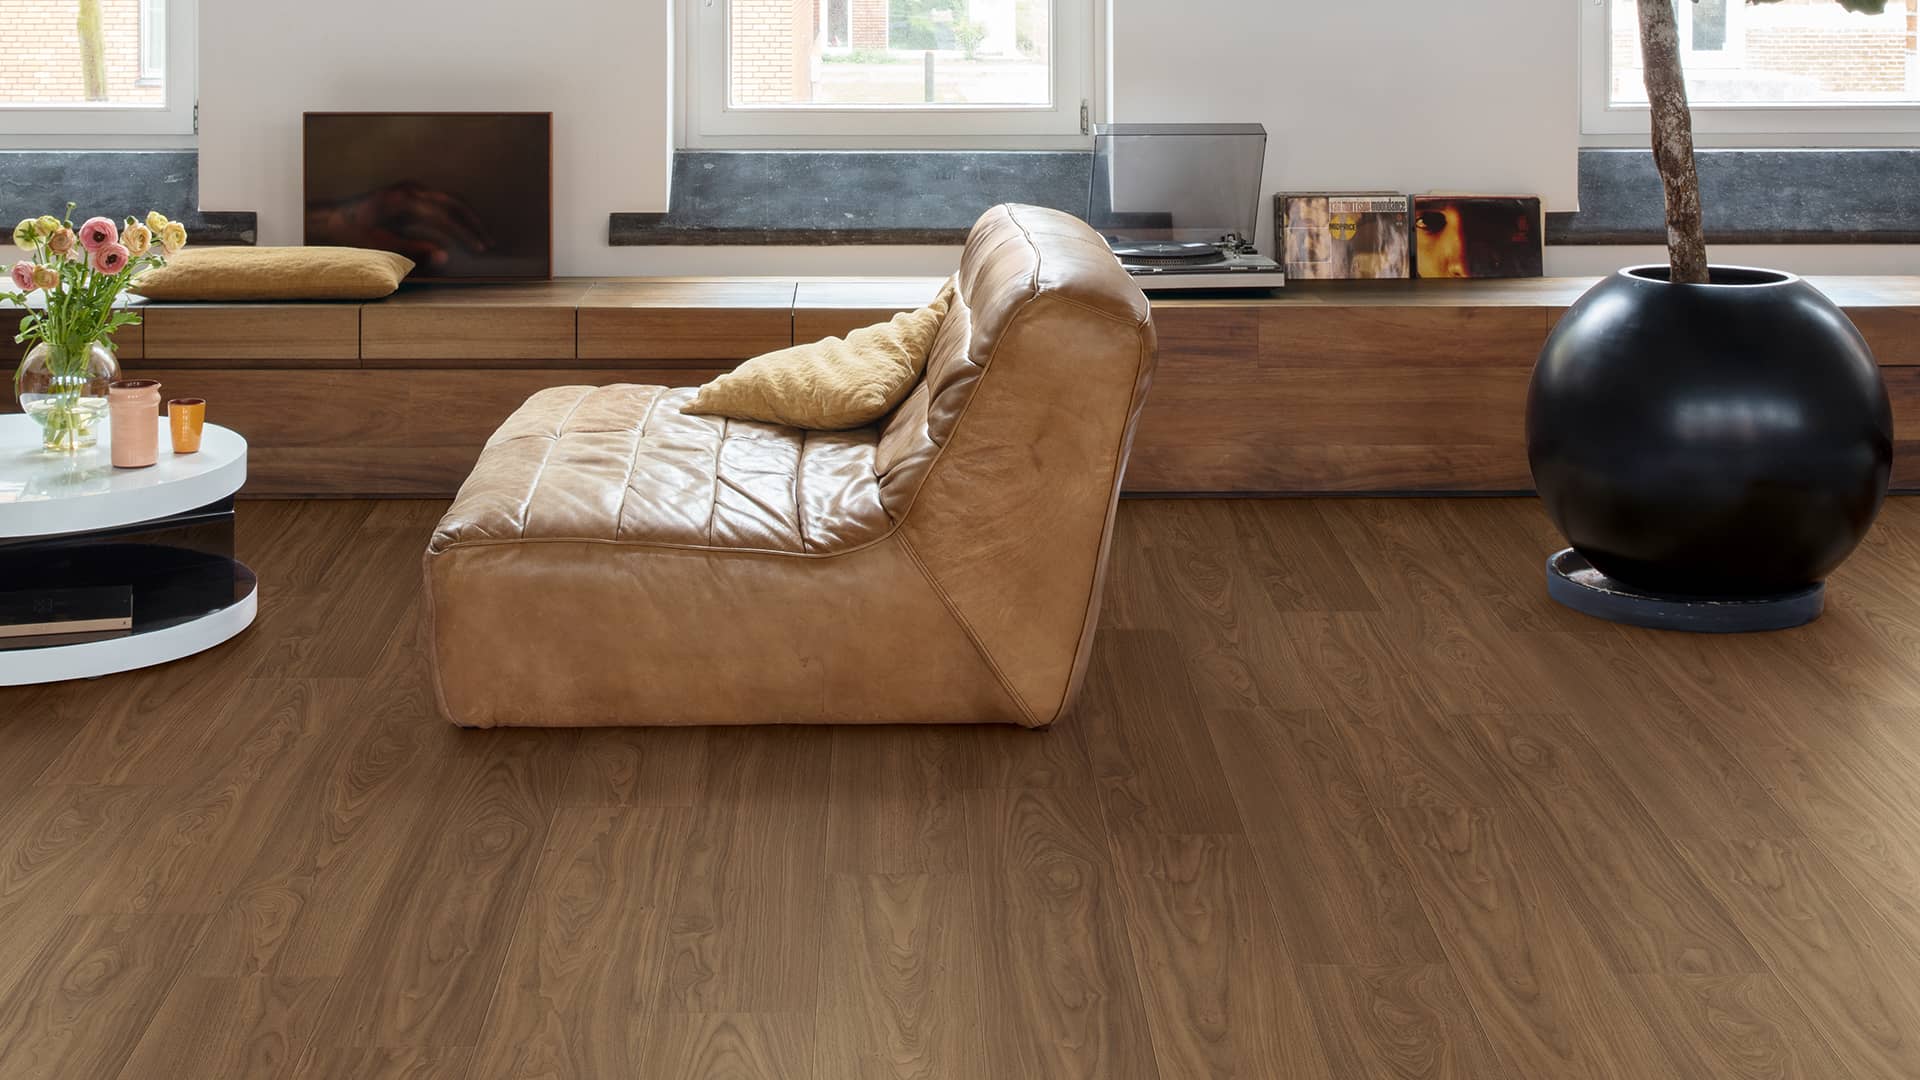 Walnut laminate flooring in living room